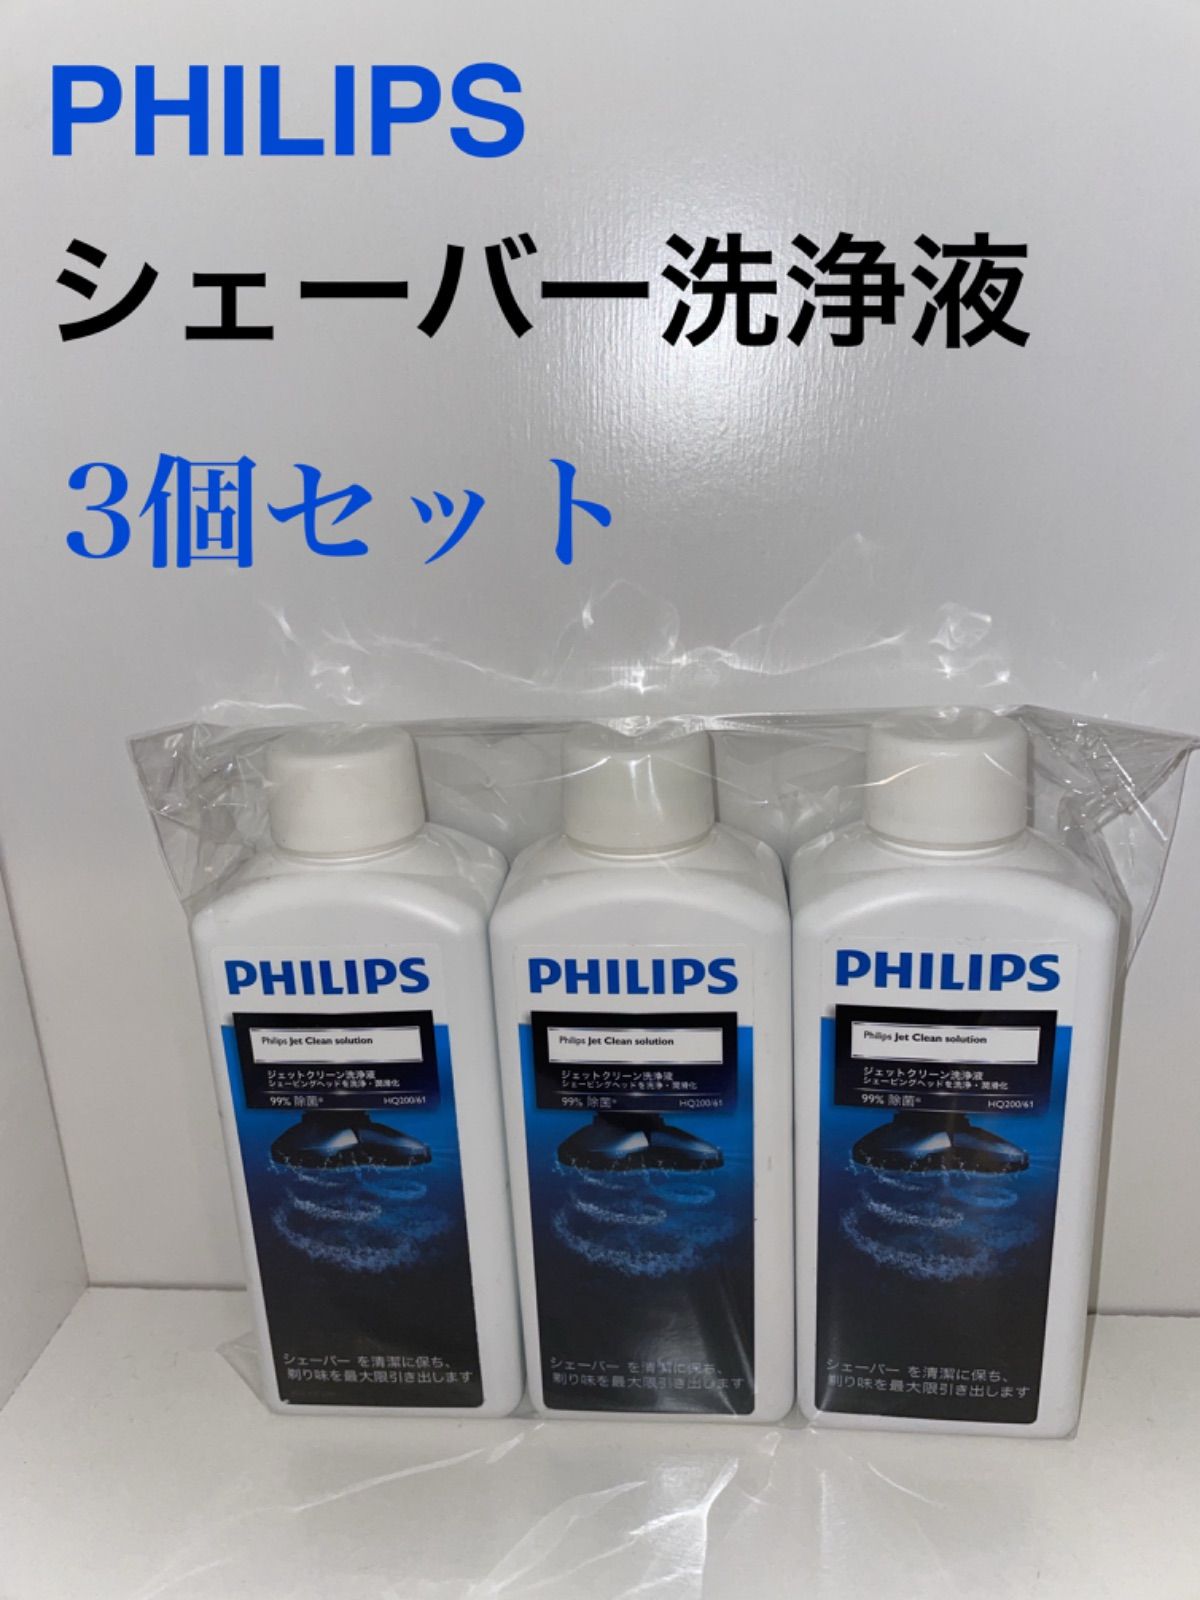 フィリップス ジェットクリーン クリーニング液 センソタッチ3D & 2Dシリー